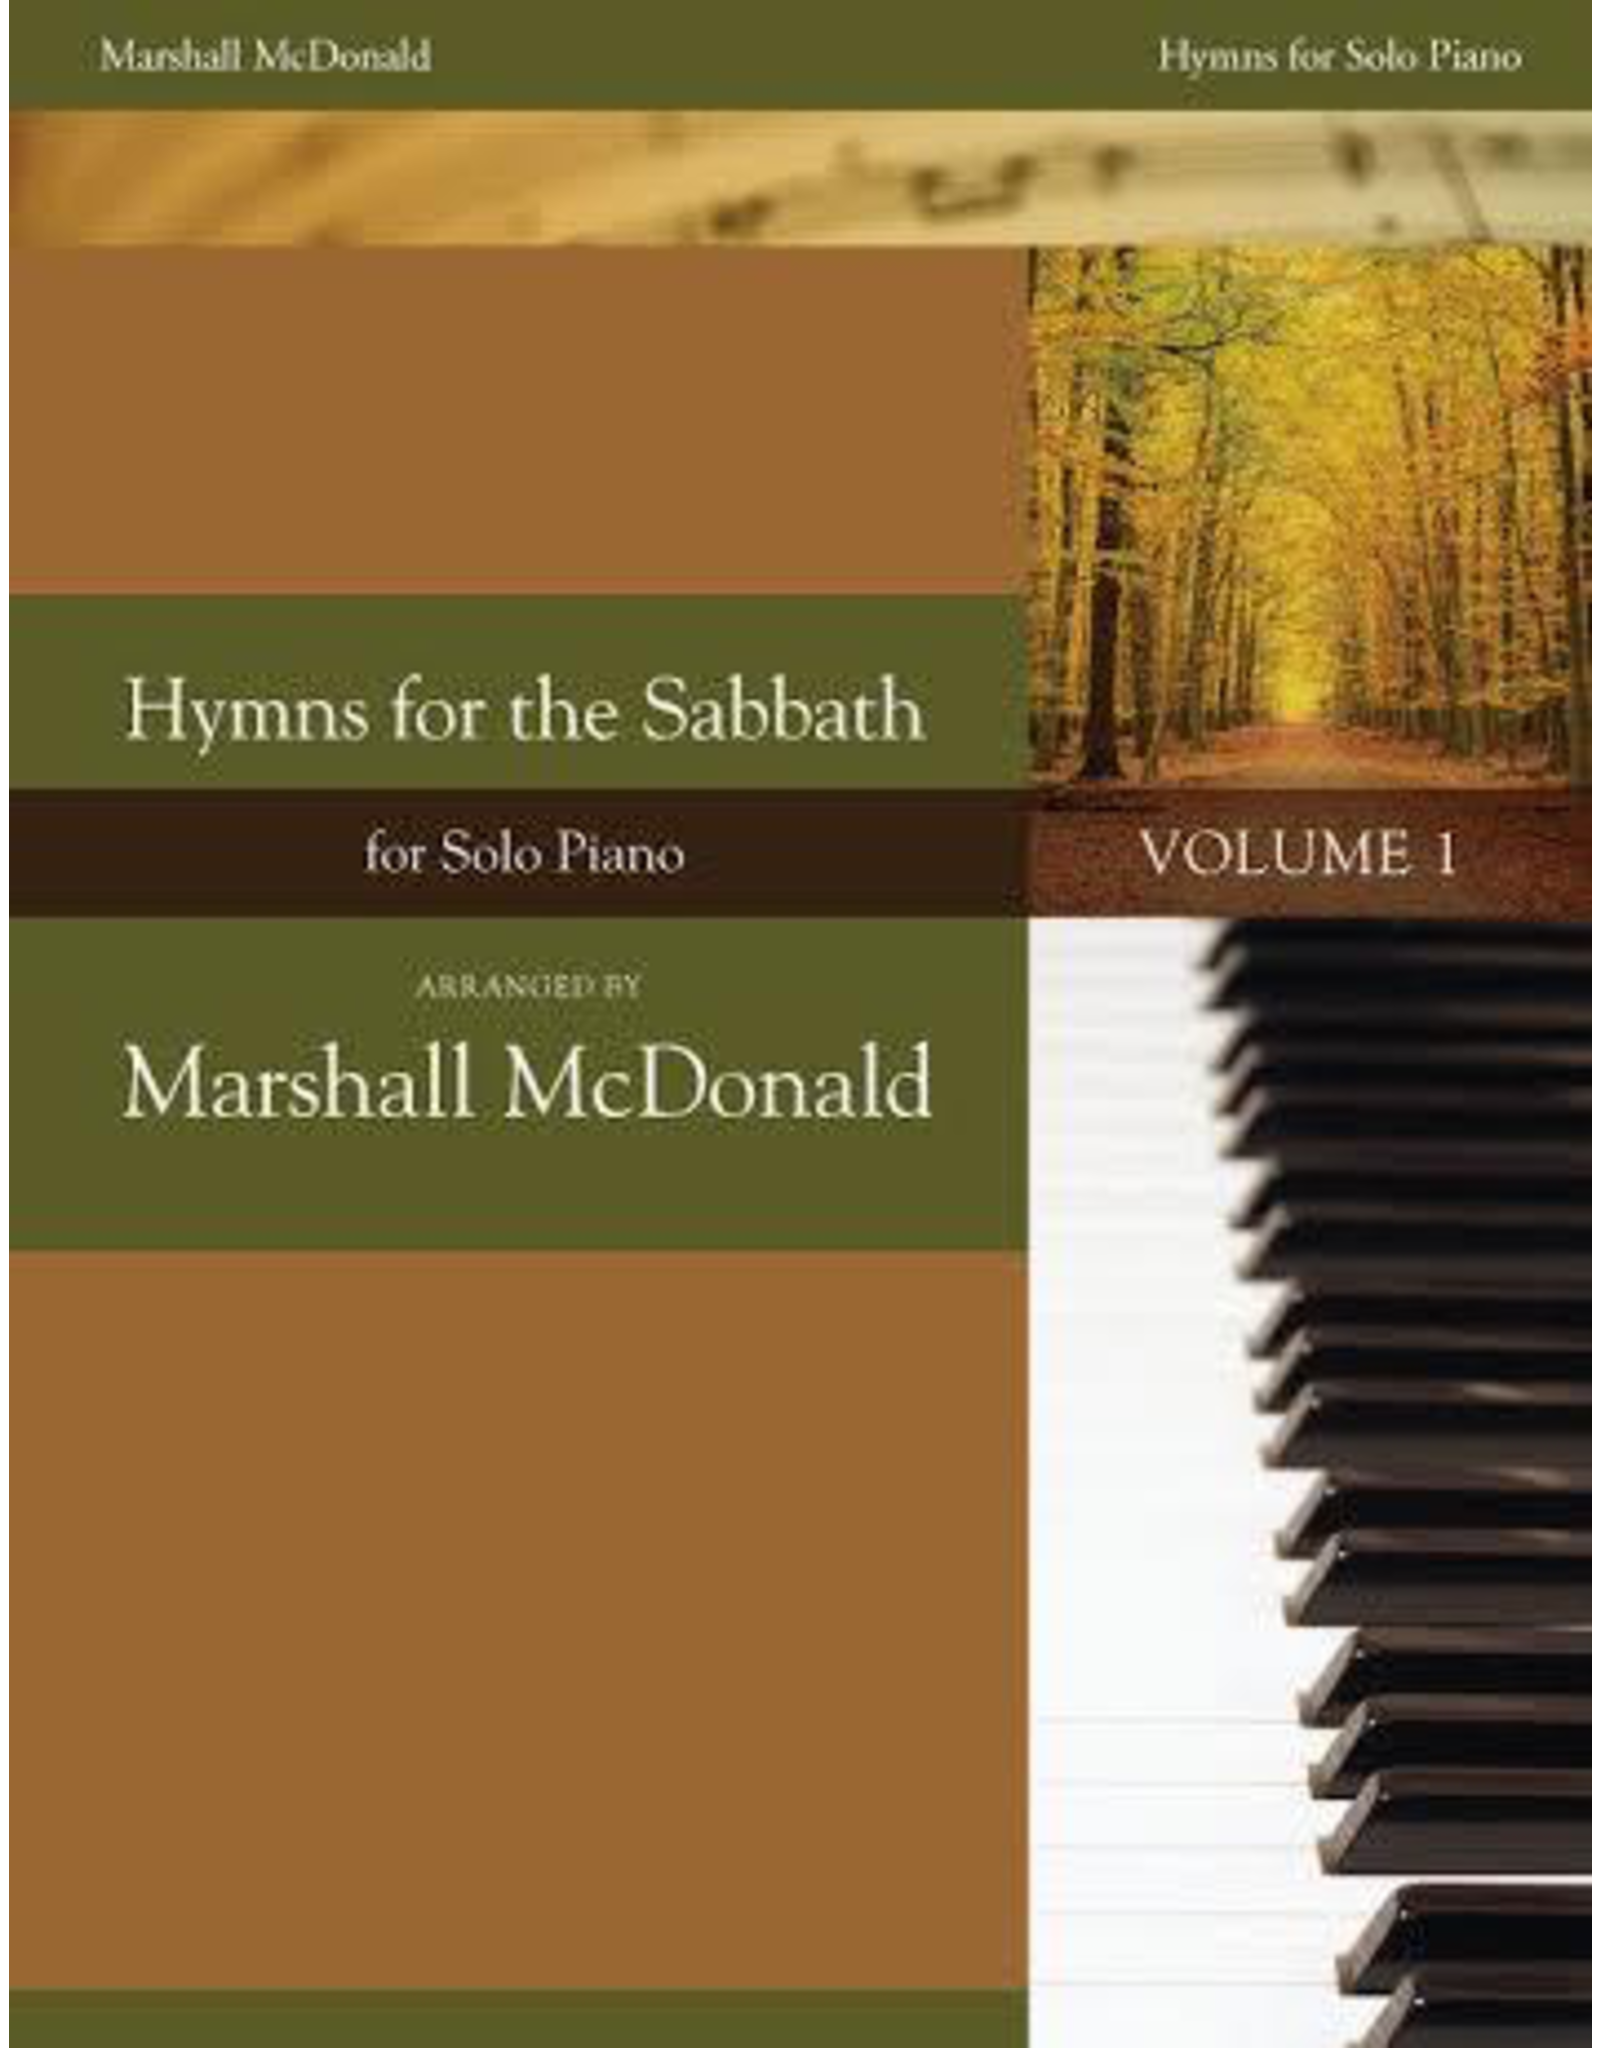 Marshall McDonald Music Hymns for the Sabbath, Volume 1 by Marshall McDonald